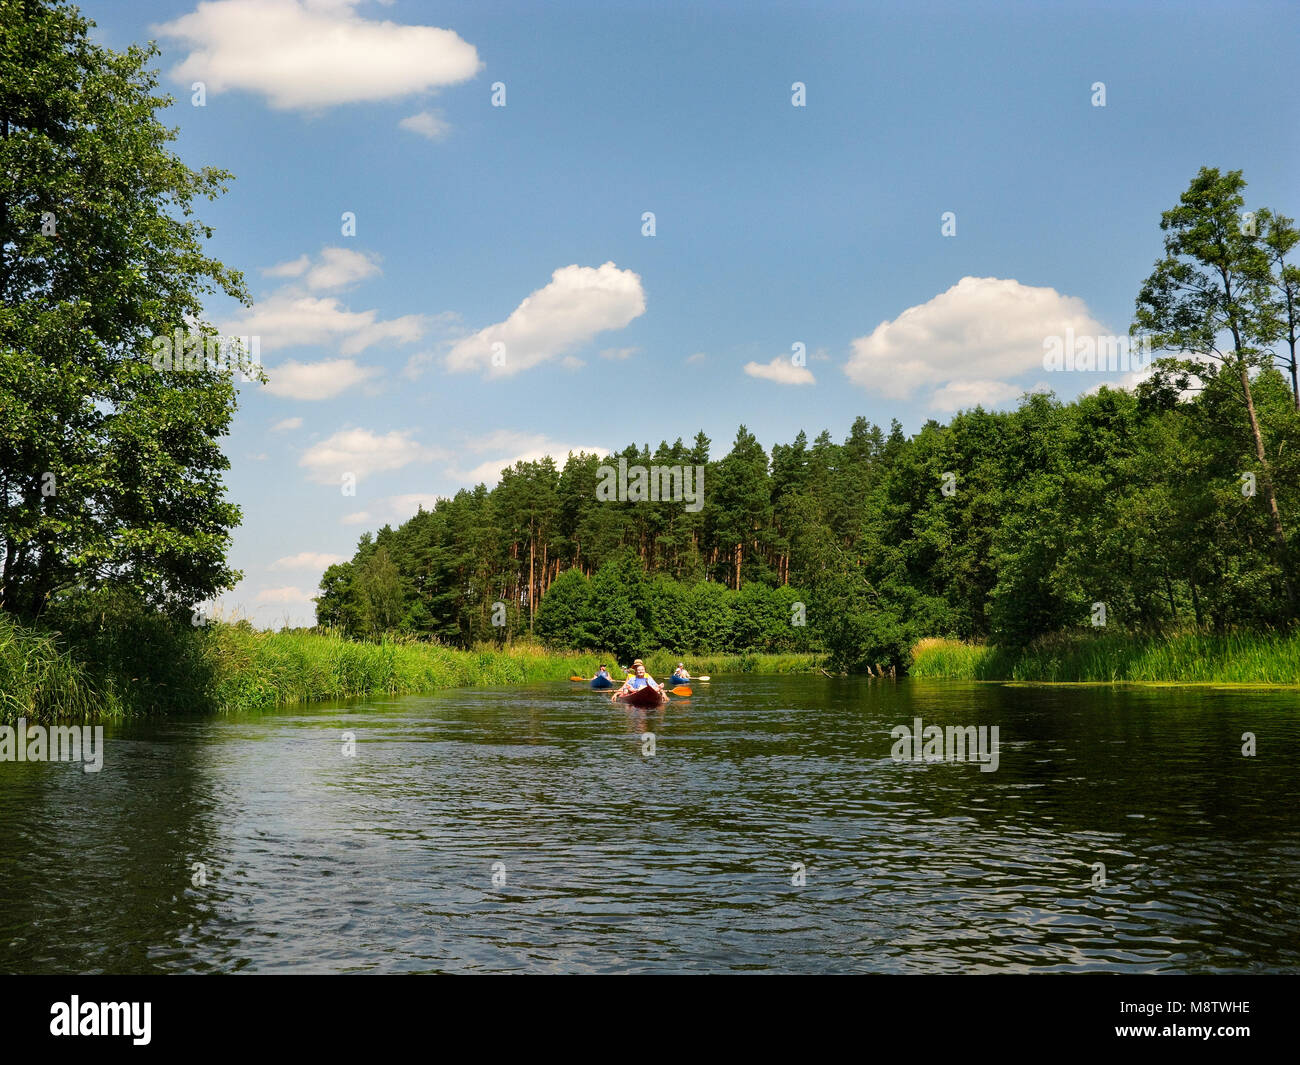 Canoë sur la piste de la rivière Brda. Les pinèdes de Tuchola, province de Poméranie, Pologne, l'Europe. Banque D'Images